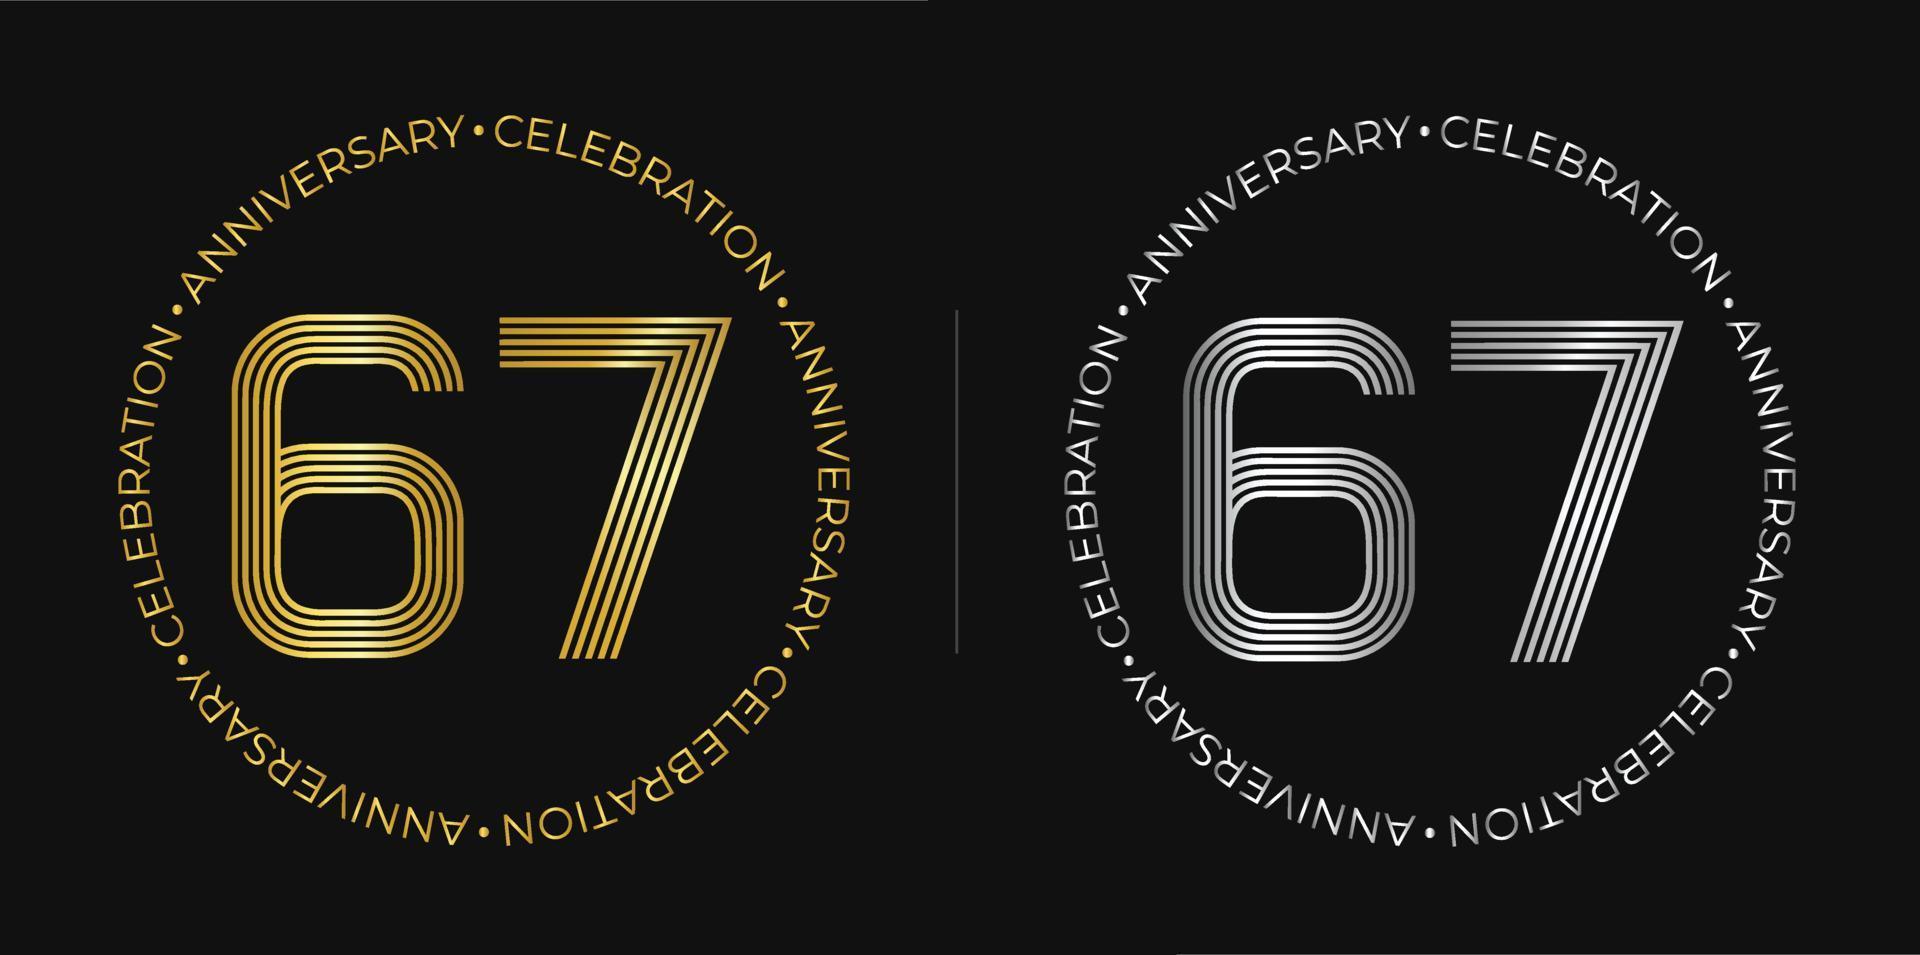 67 cumpleaños. Banner de celebración de aniversario de sesenta y siete años en colores dorado y plateado. logo circular con diseño de números originales en líneas elegantes. vector